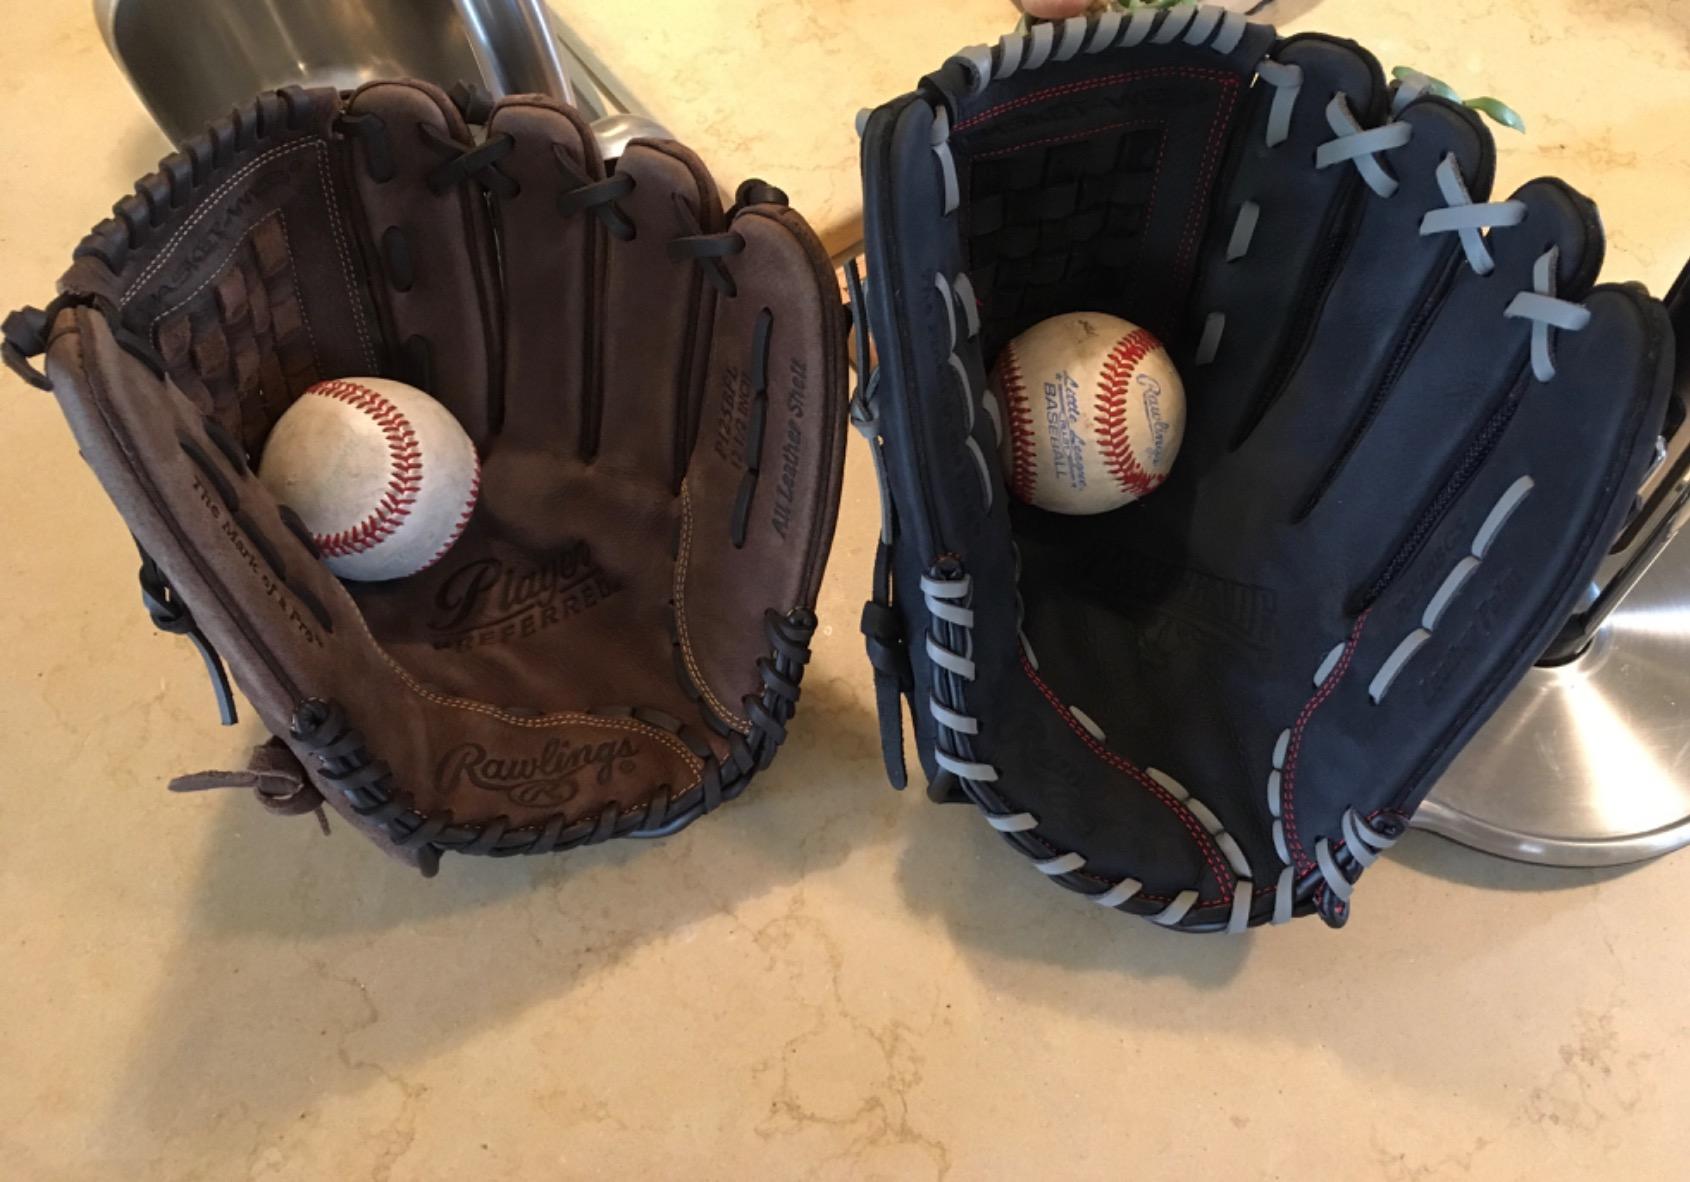 softball vs baseball gloves